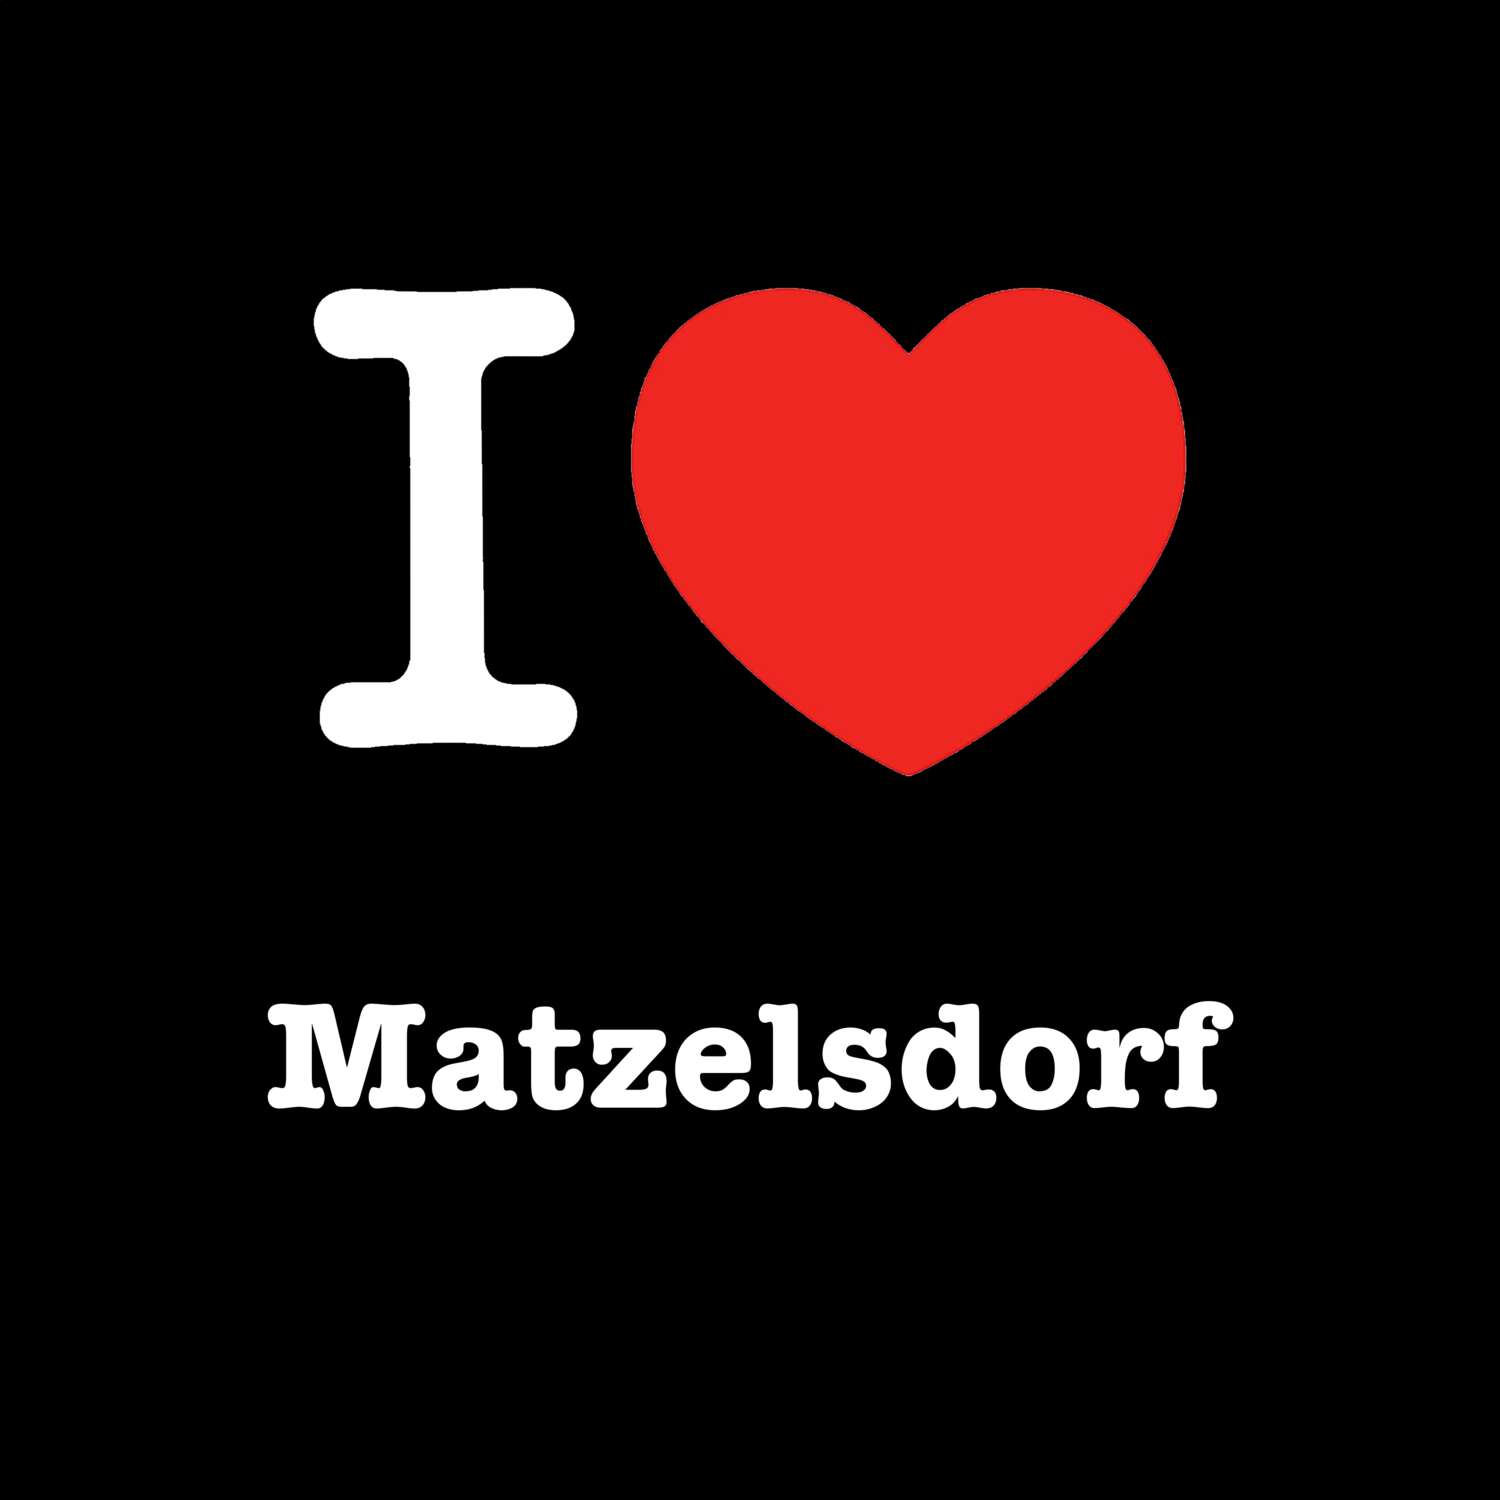 Matzelsdorf T-Shirt »I love«